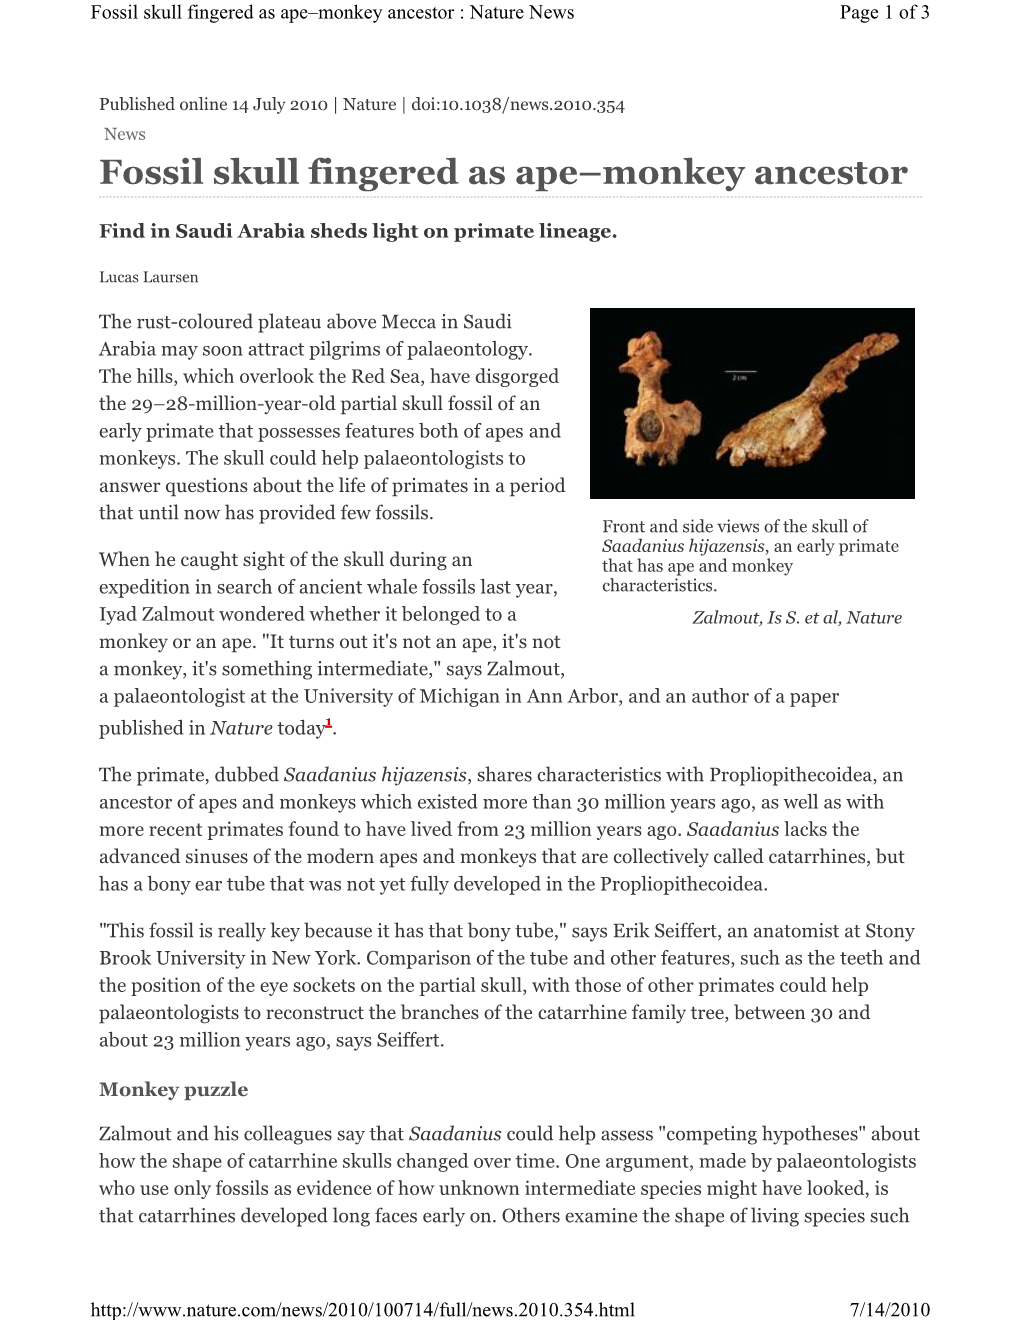 Fossil Skull Fingered As Ape–Monkey Ancestor